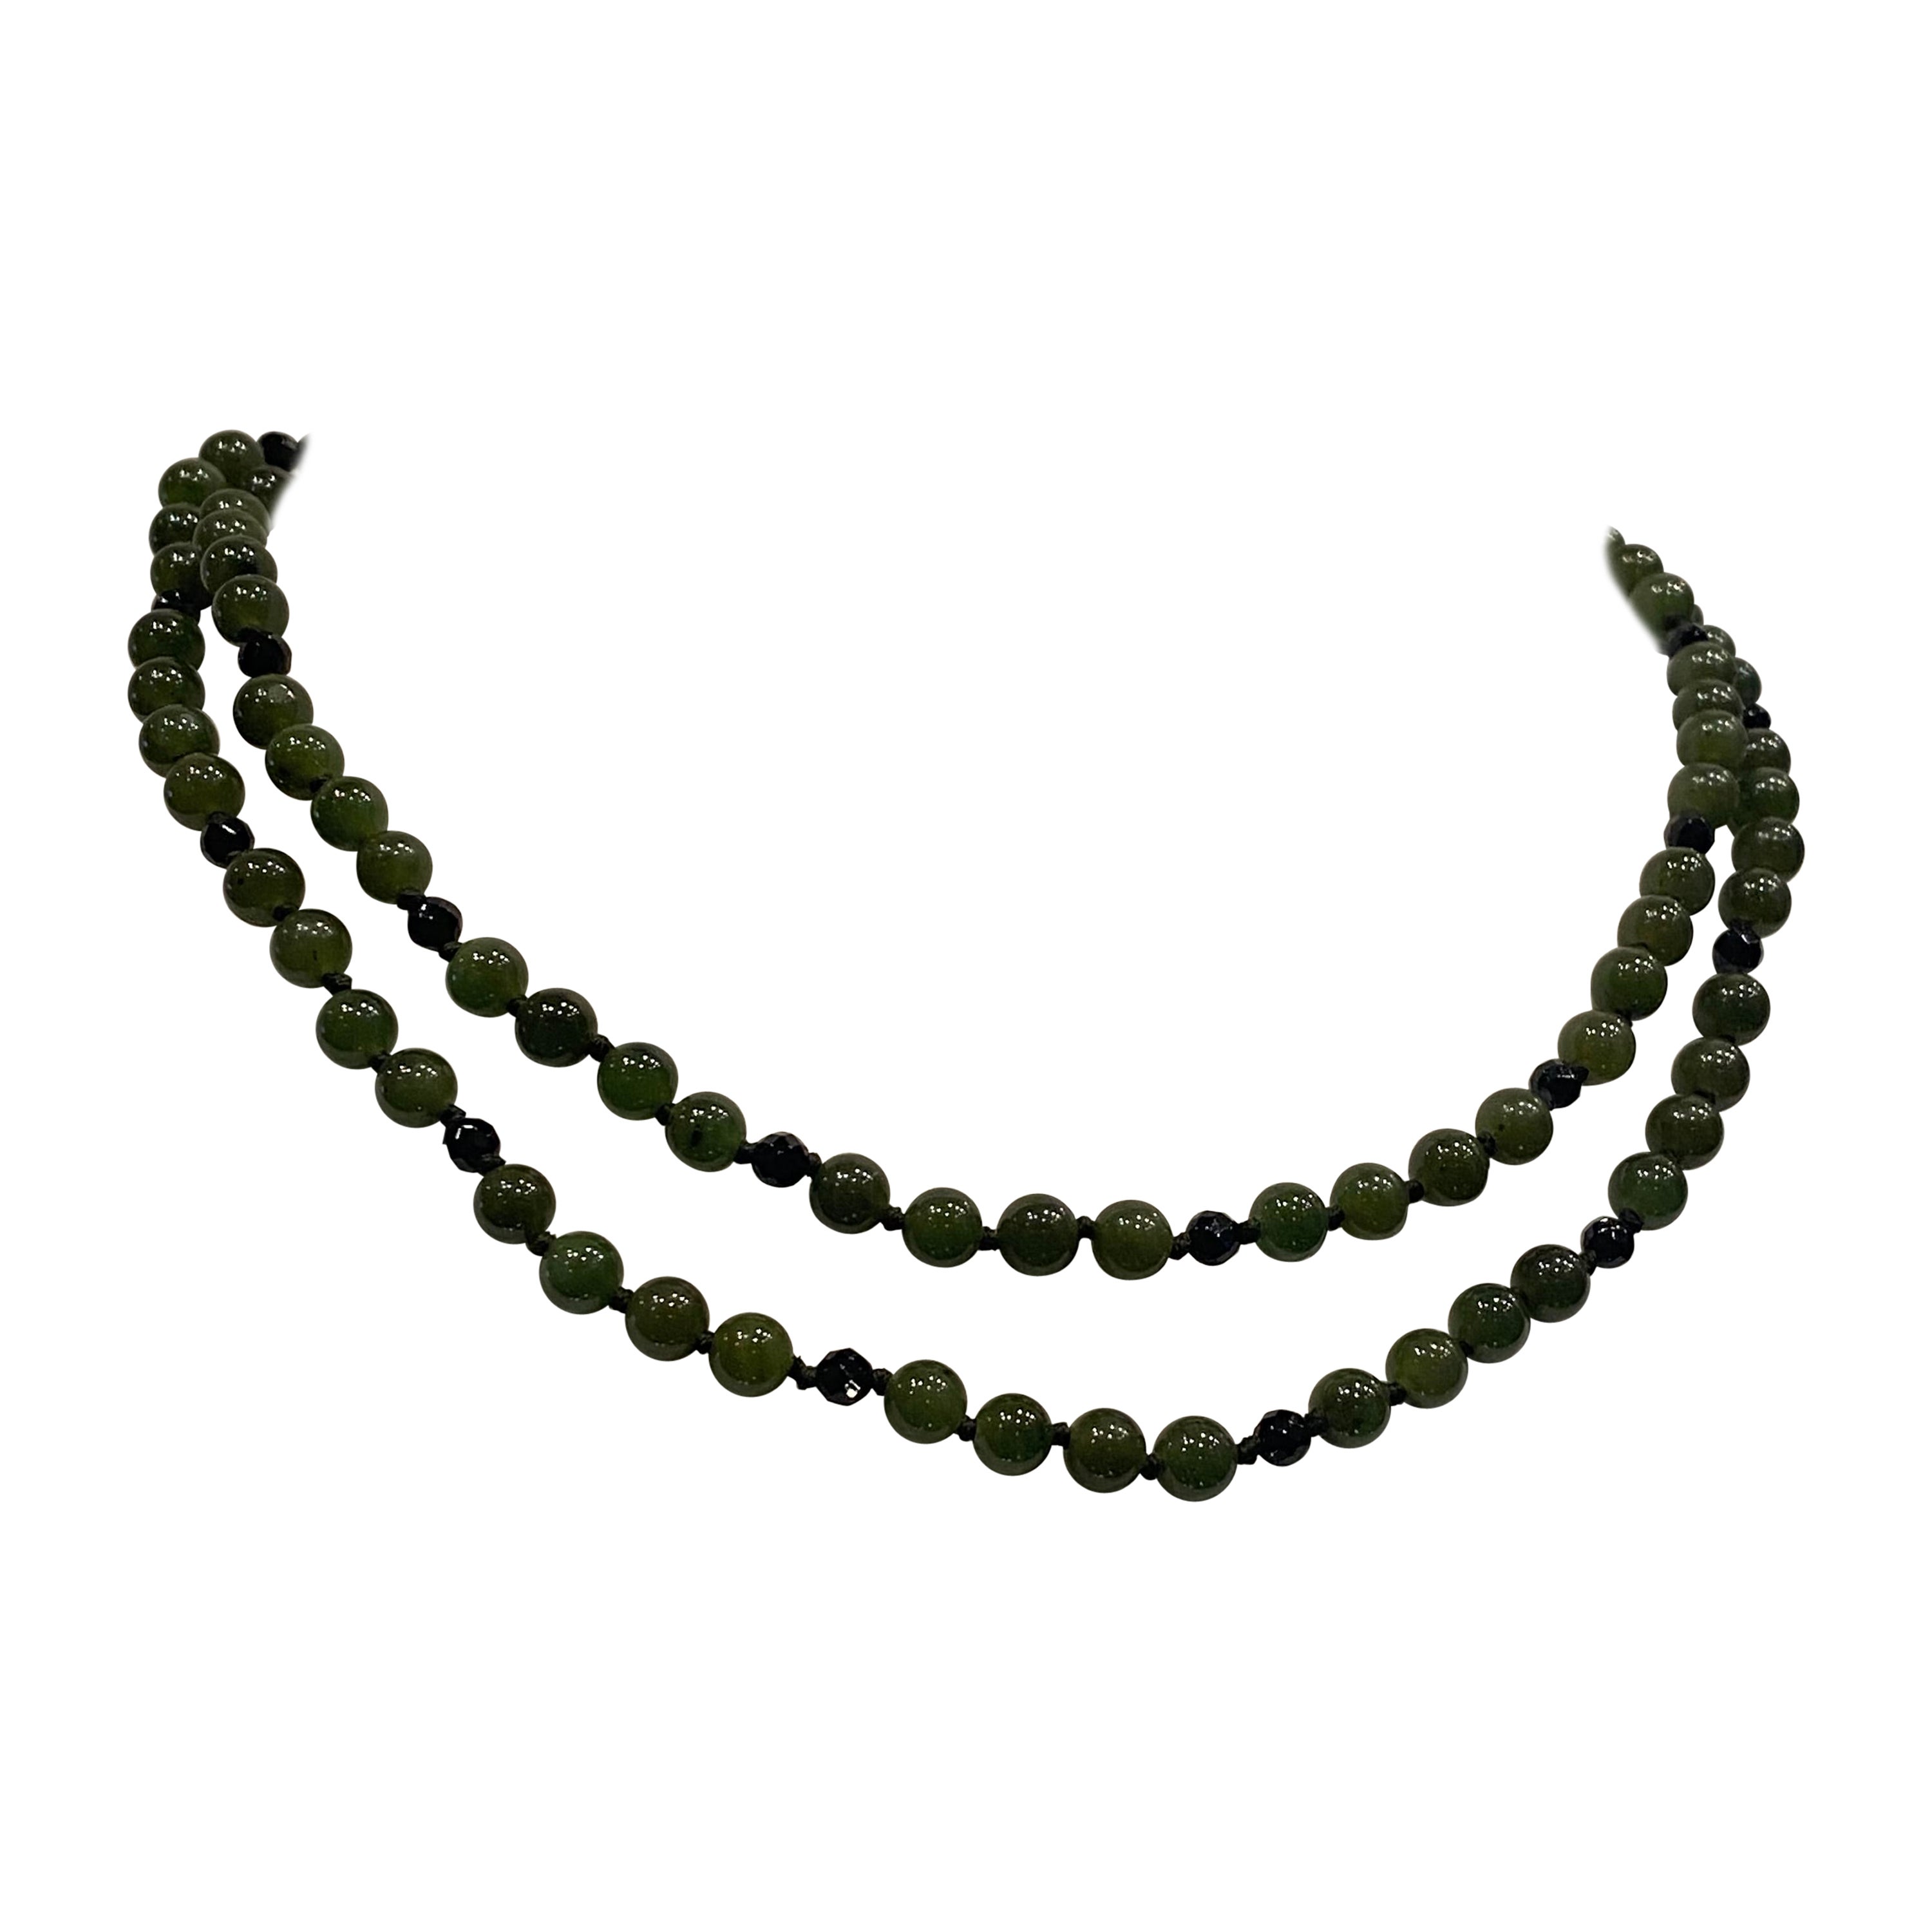 Collier à double rang de perles de jade vert intense et profond, onyx et or, années 1960